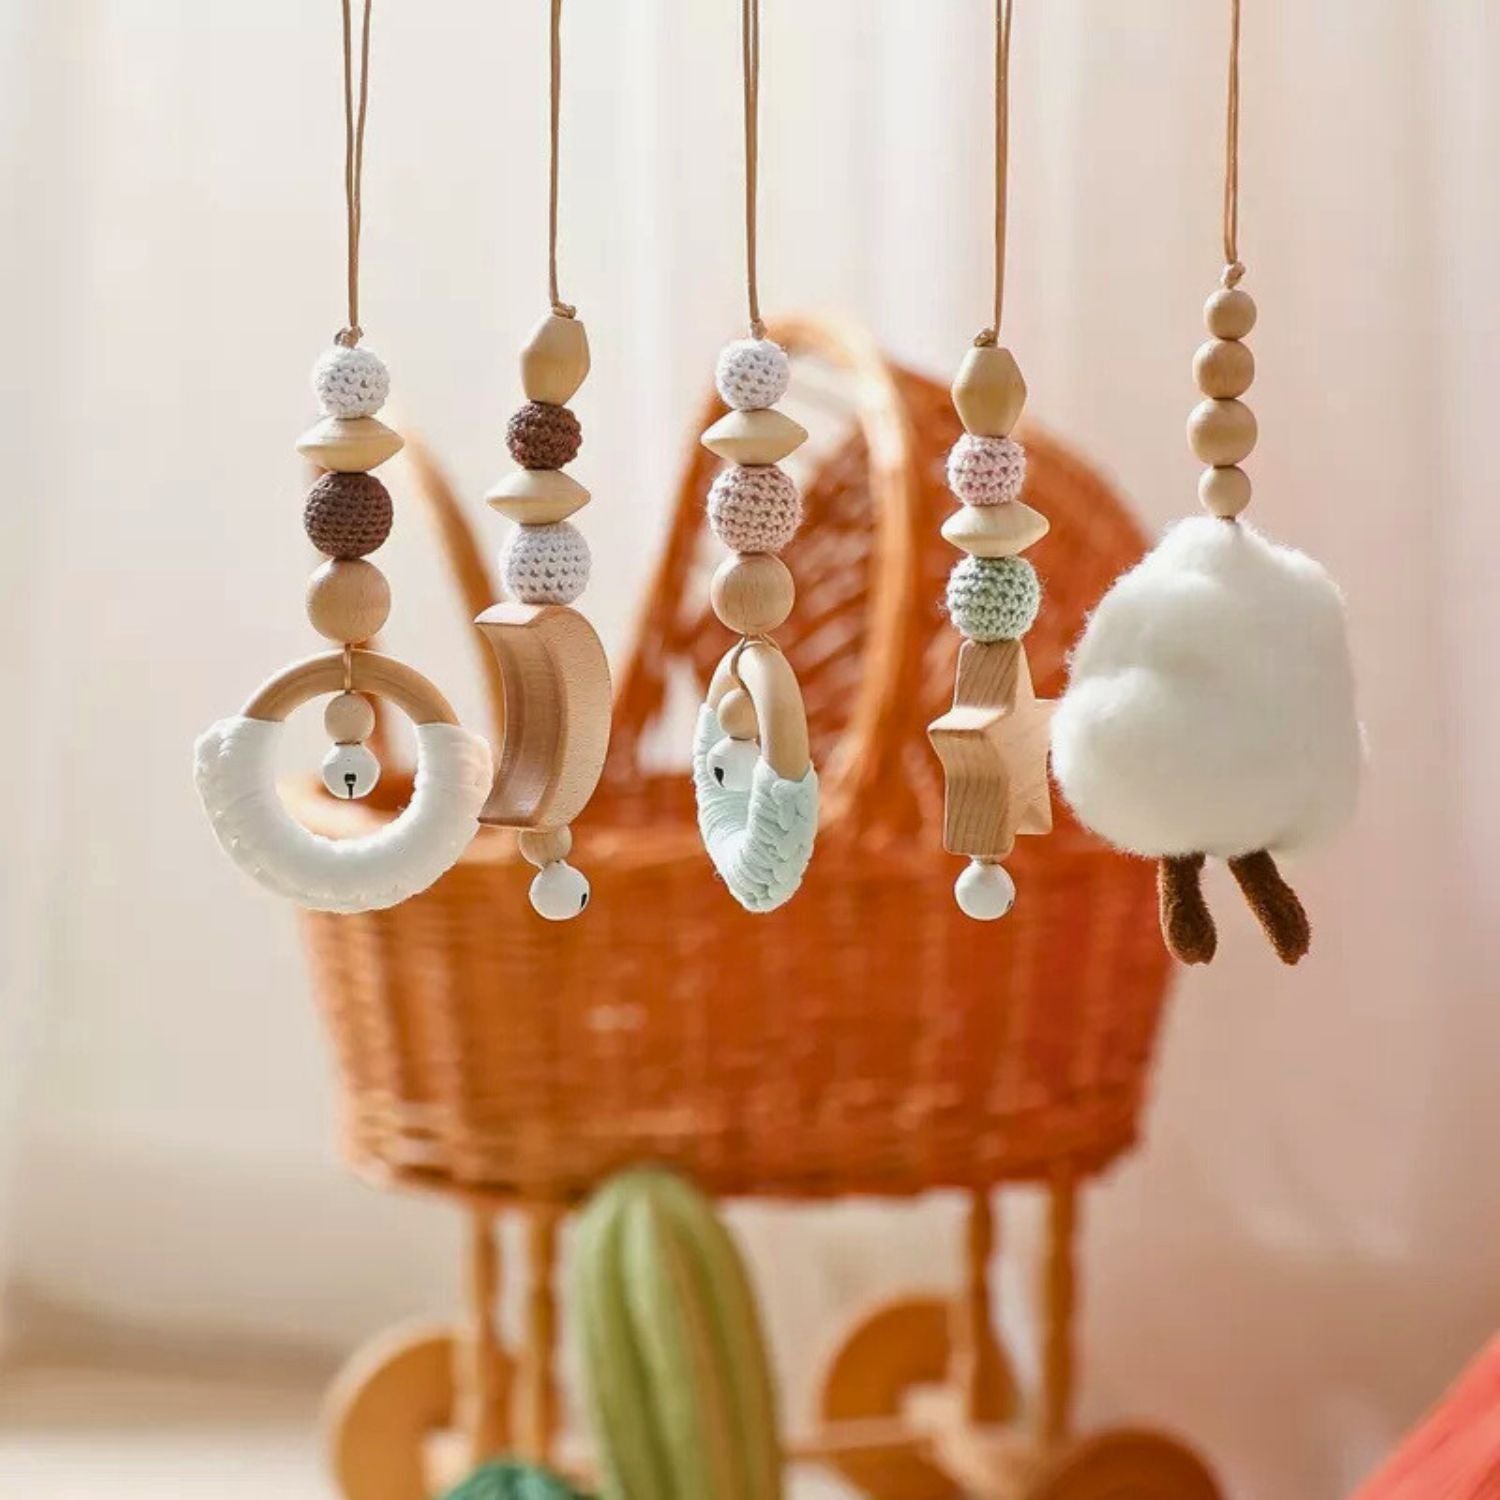 5 hanging toys rattles.